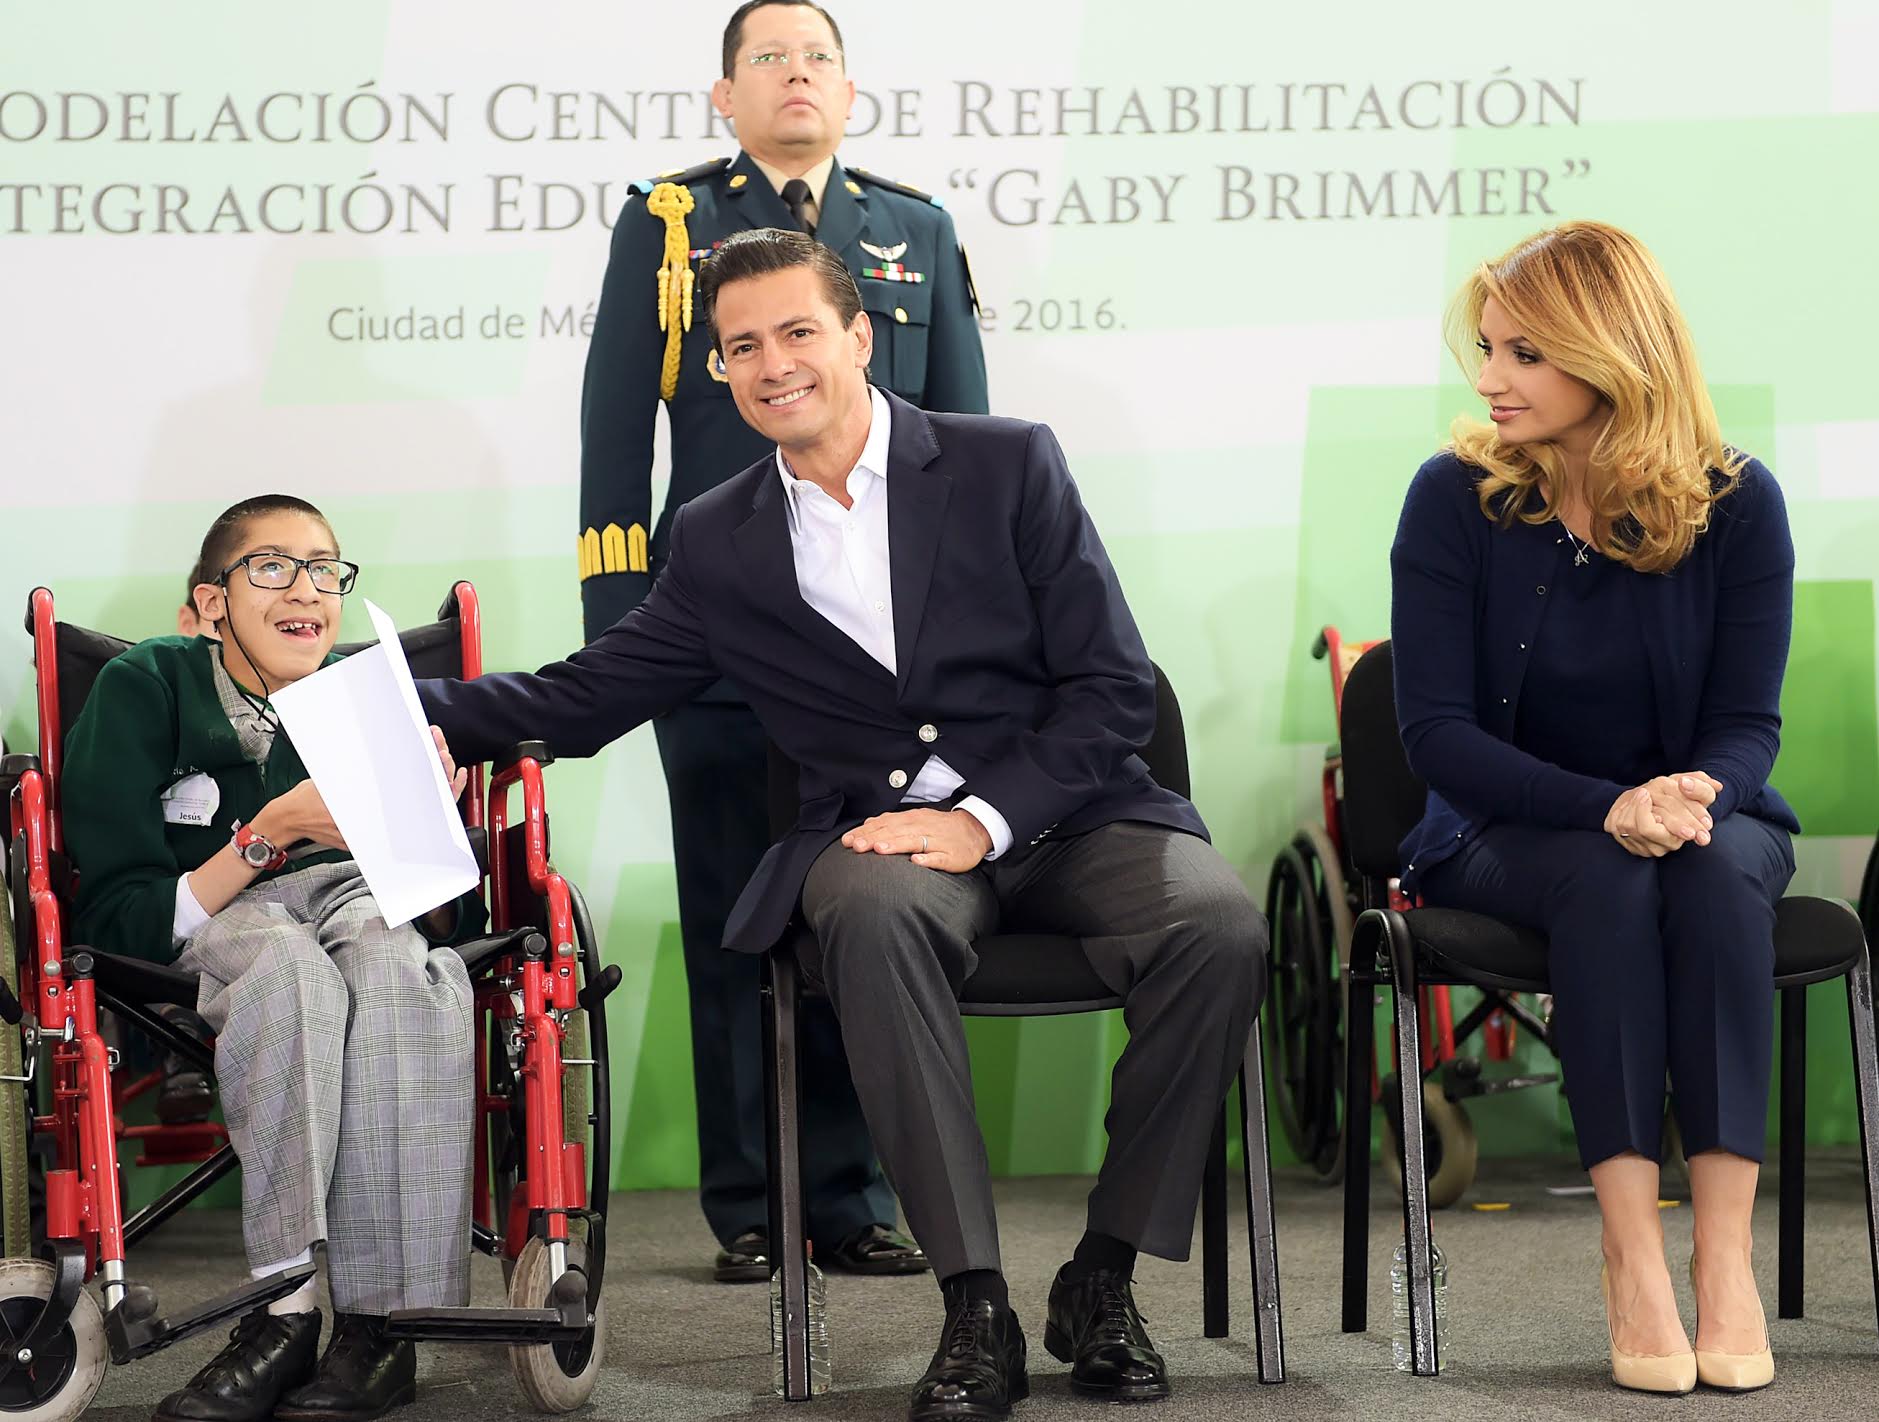 Gaby Brimmer National Center for Rehabilitation and Educational Integration  | Presidencia de la República EPN | Gobierno | gob.mx